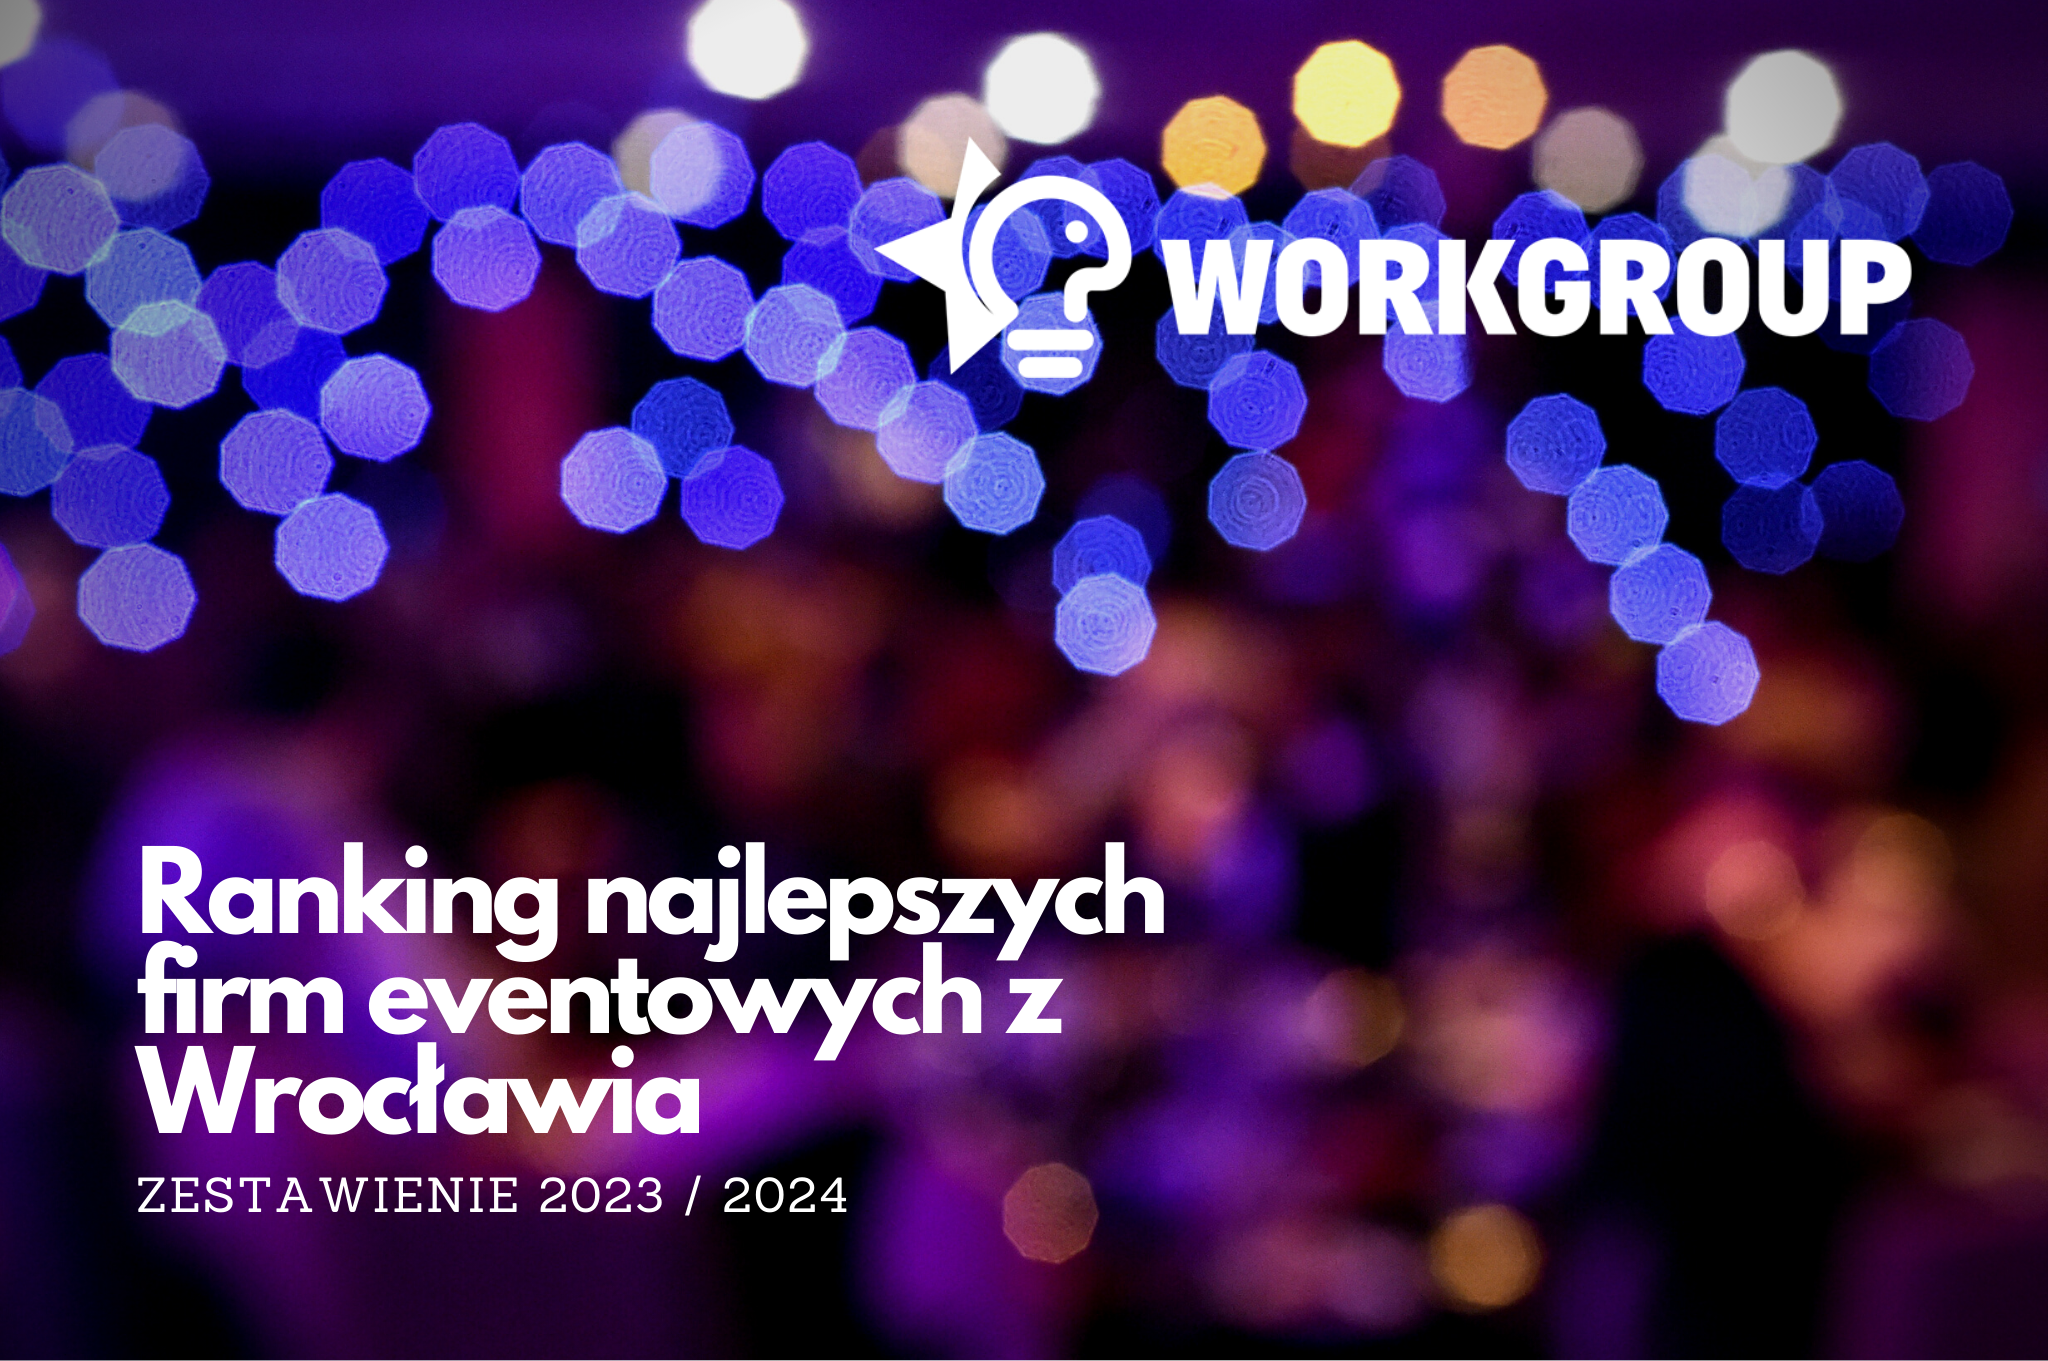 Work Group Agencja Eventowa Wroclaw